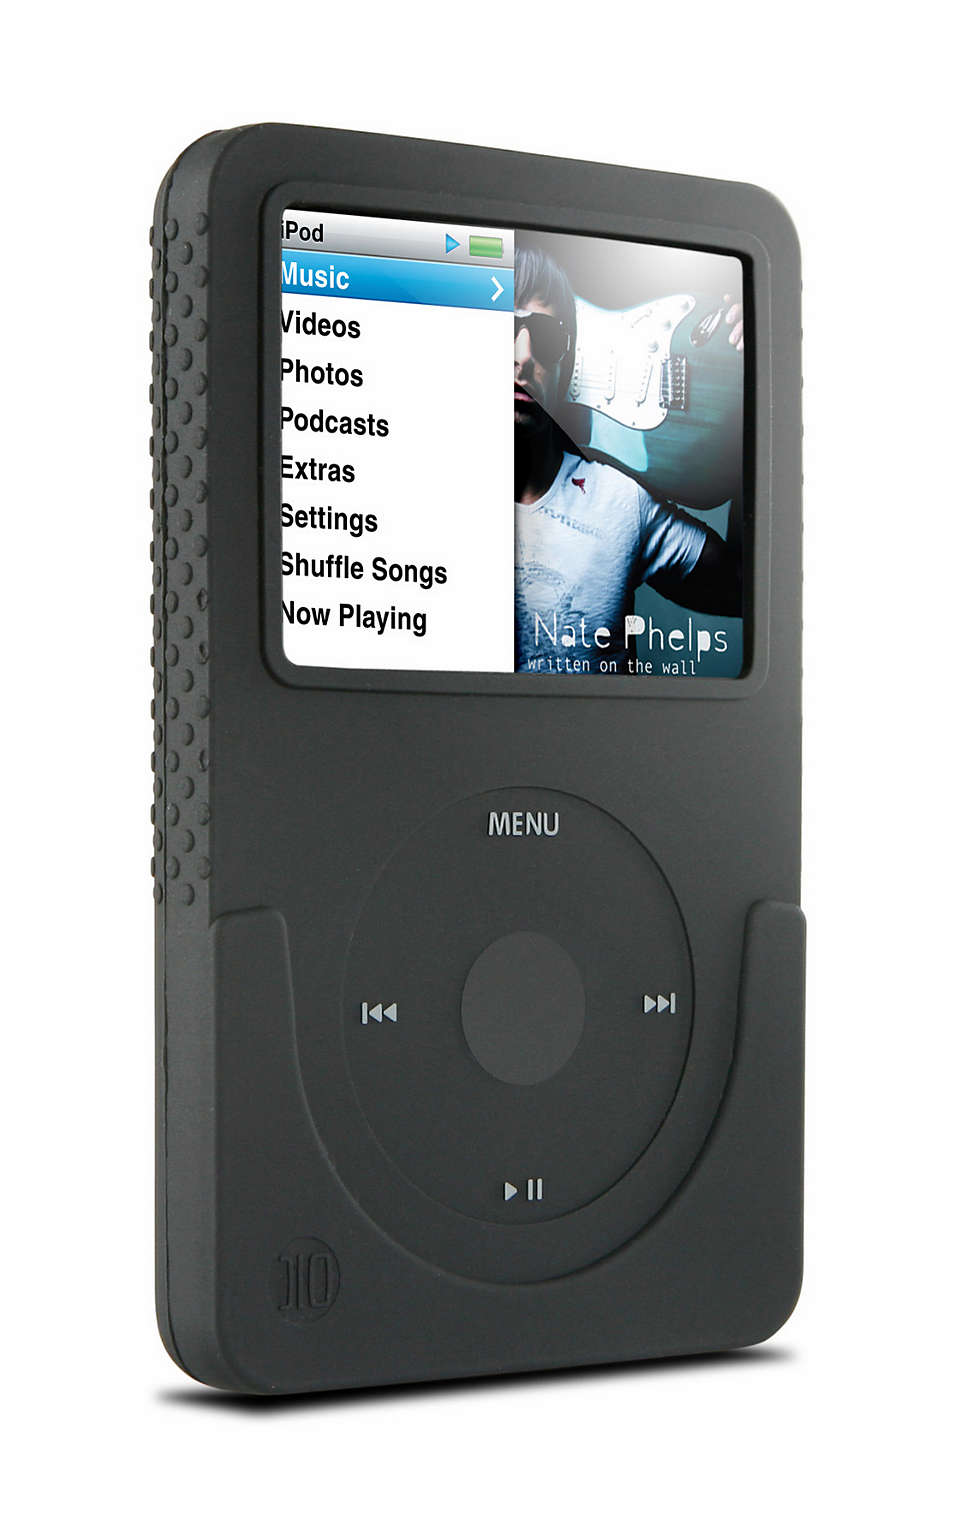 Proteja o seu iPod com estilo